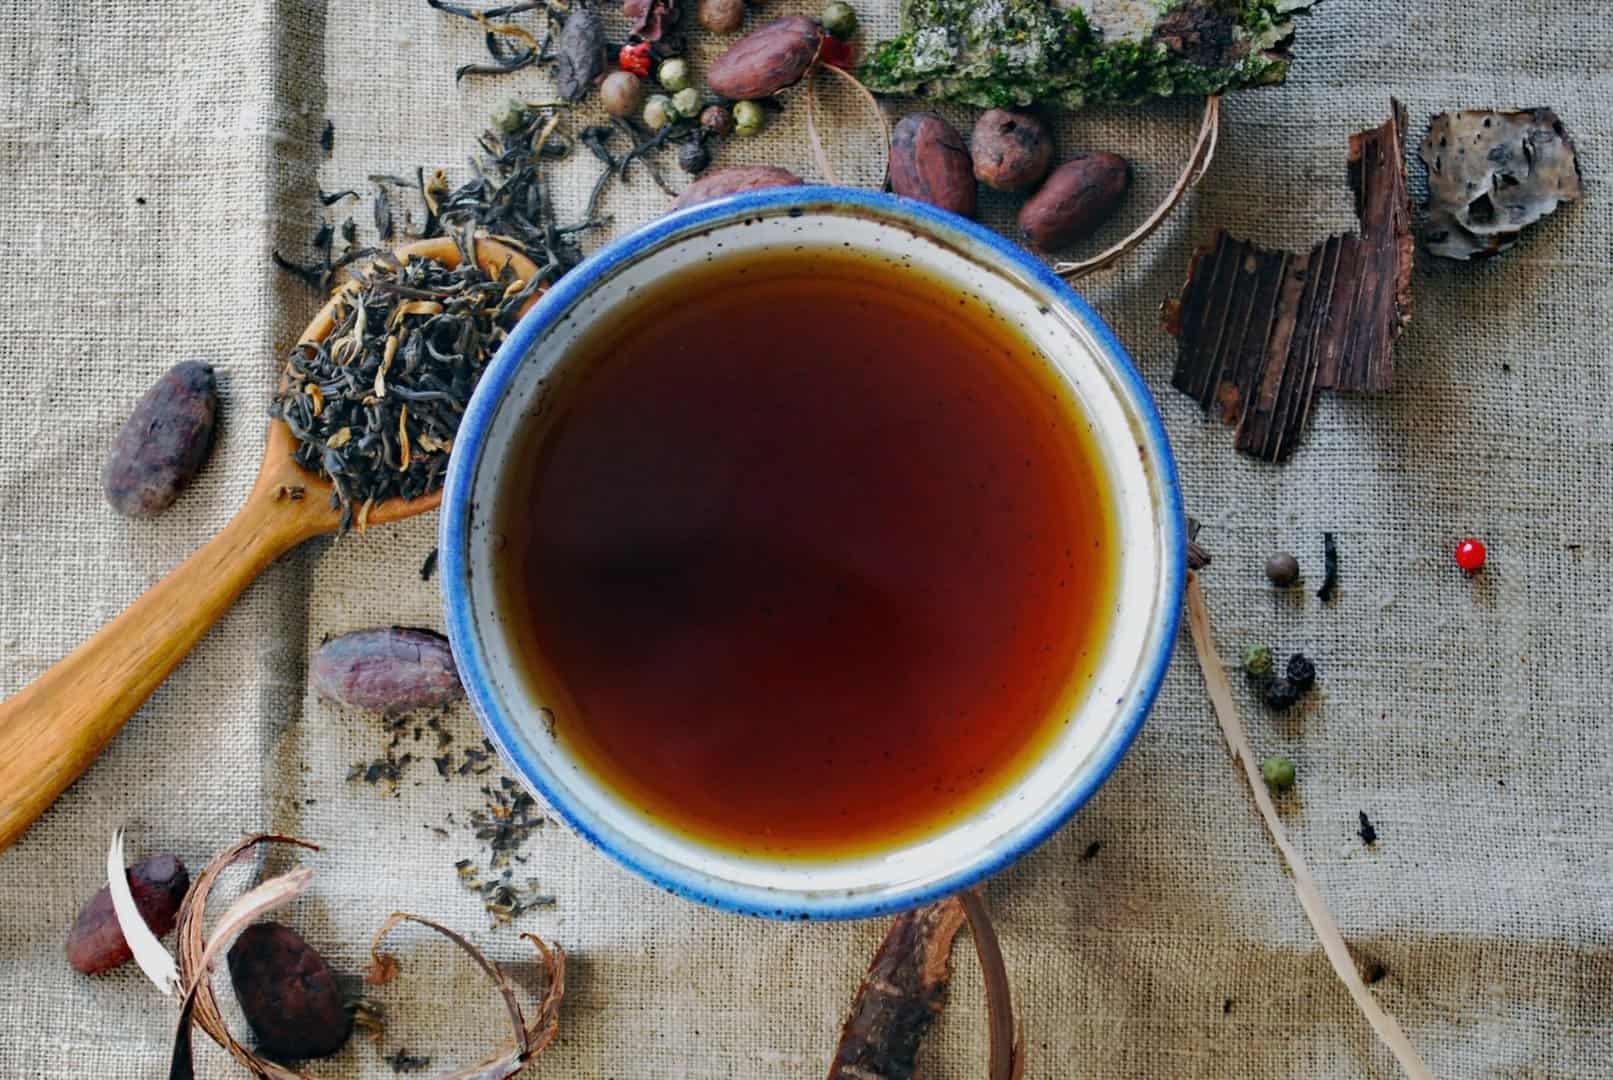 Turn your indoor herb garden into fresh tea